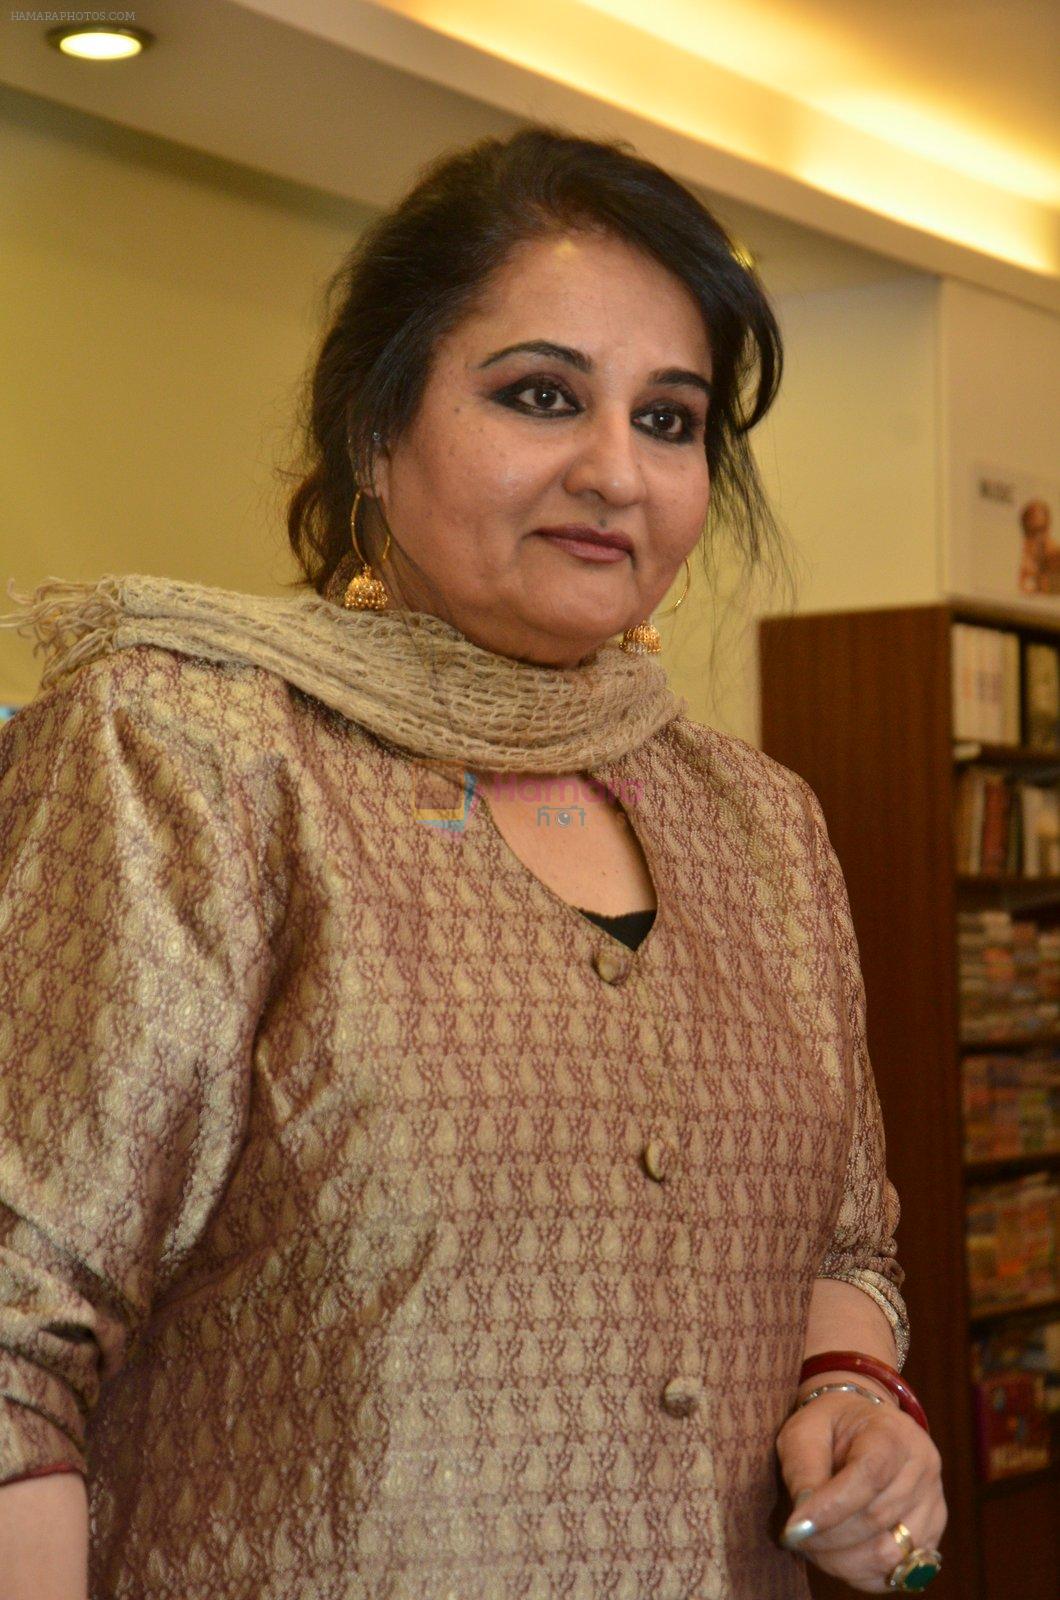 Reena Roy at Dr Lakdawala book launch on 24th May 2016